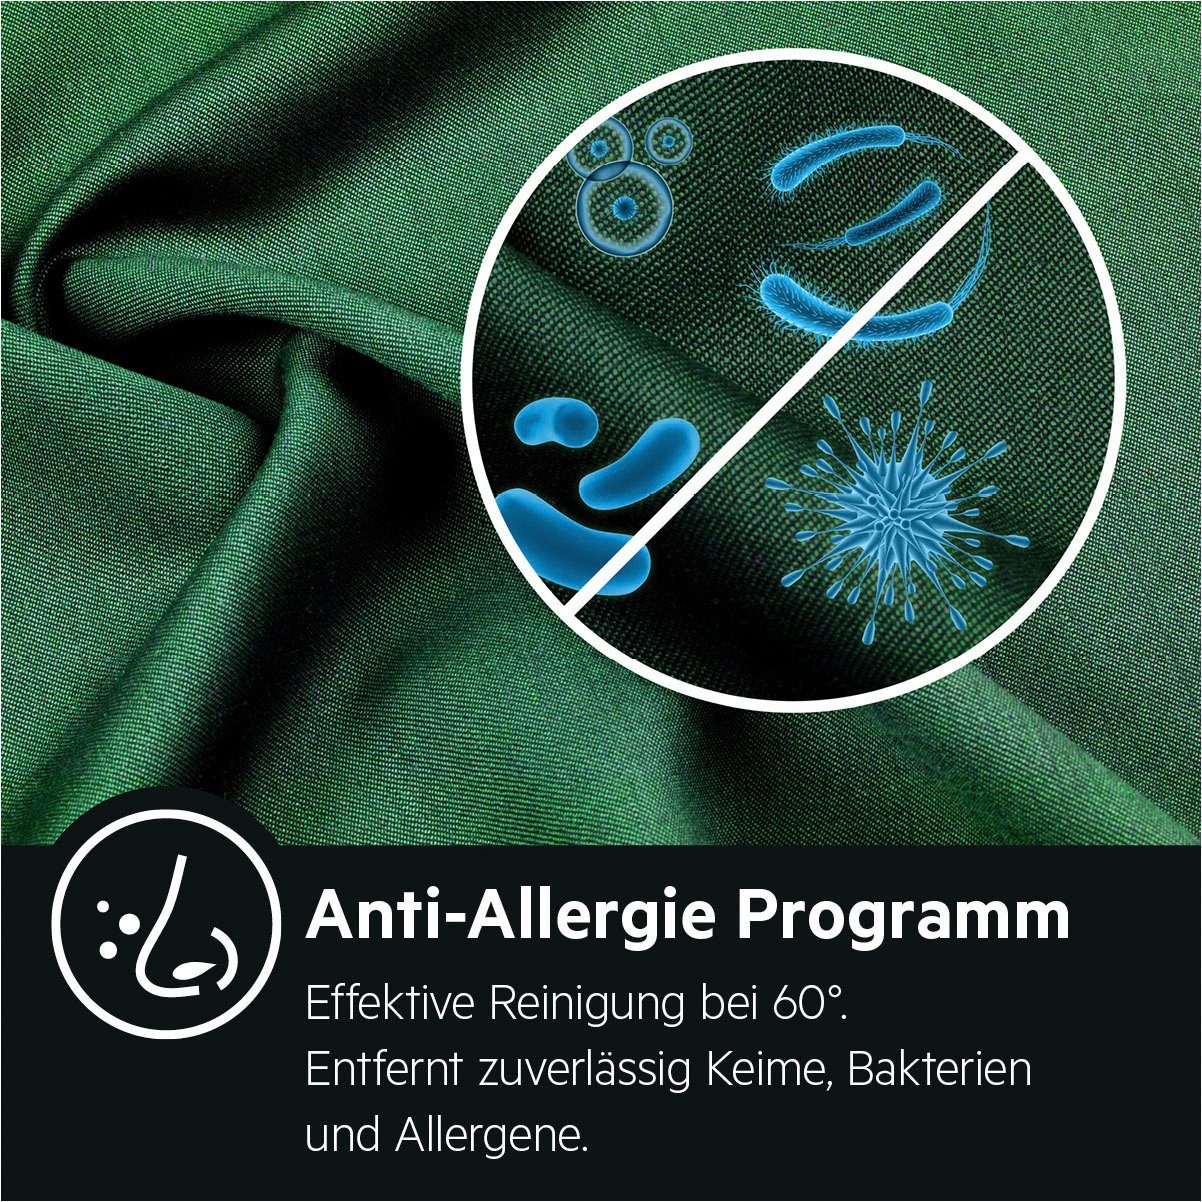 8 6000 Anti-Allergie Serie Dampf kg, AEG mit Programm Waschmaschine ProSense-Technologie 1600 L6FA68FL, Hygiene-/ U/min, mit